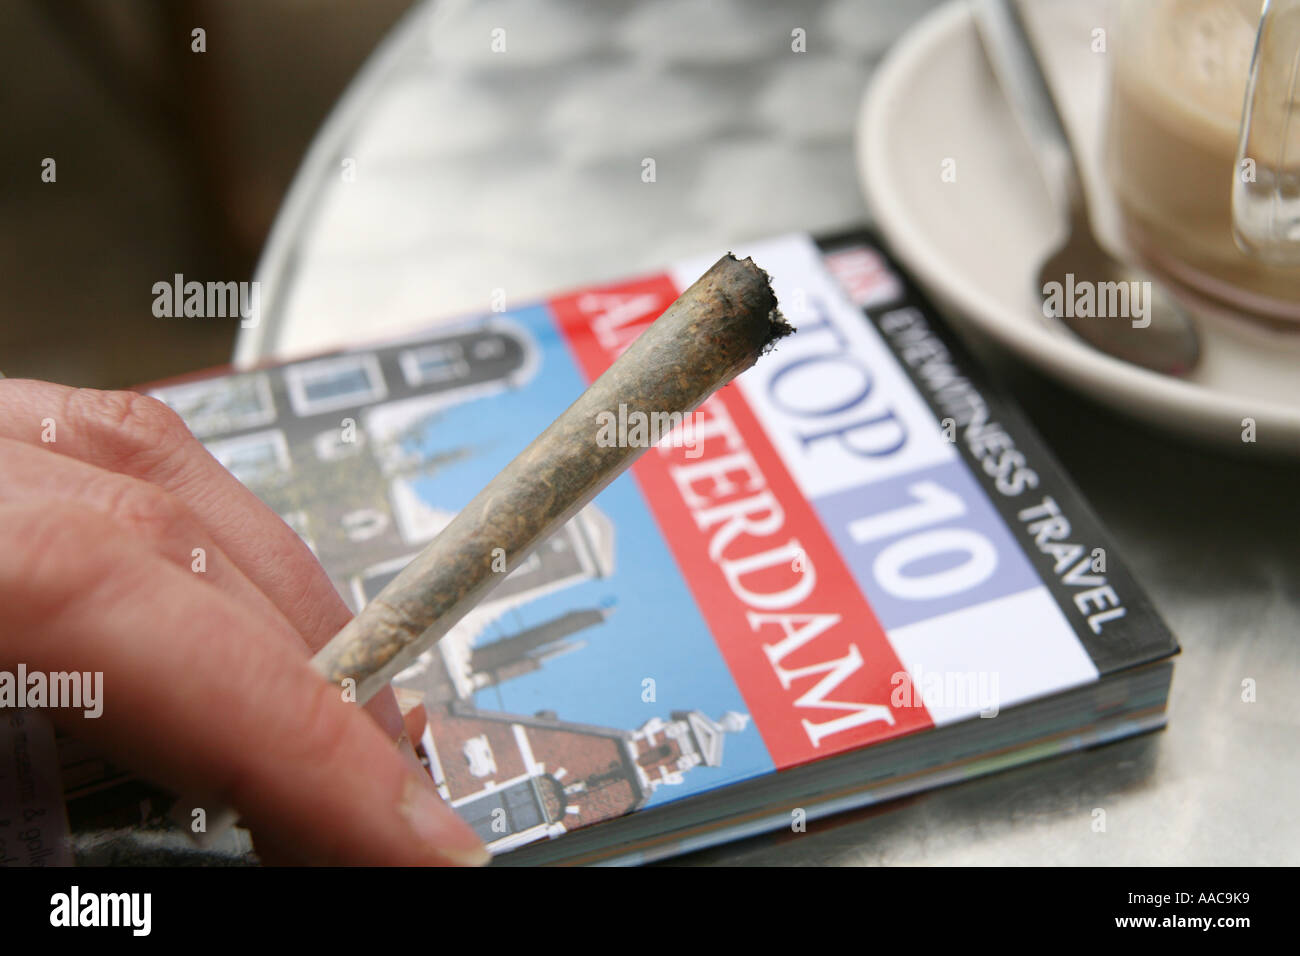 Giovane donna fumare marijuana in un coffee shop in Olanda Foto Stock